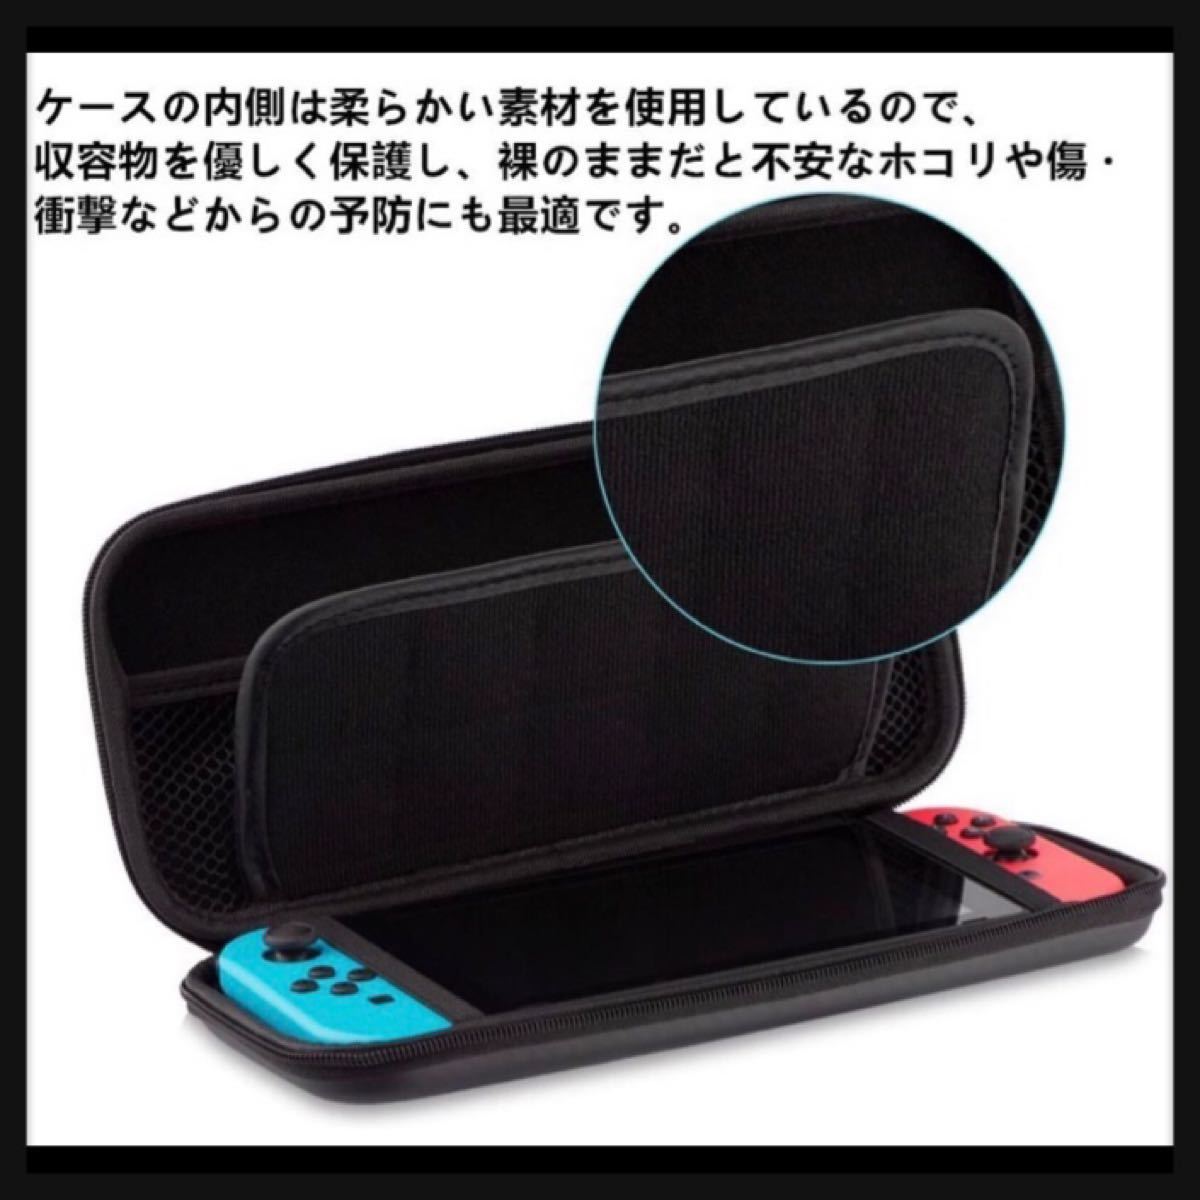 Nintendo Switch 収納 ケース シンプル ブルー 